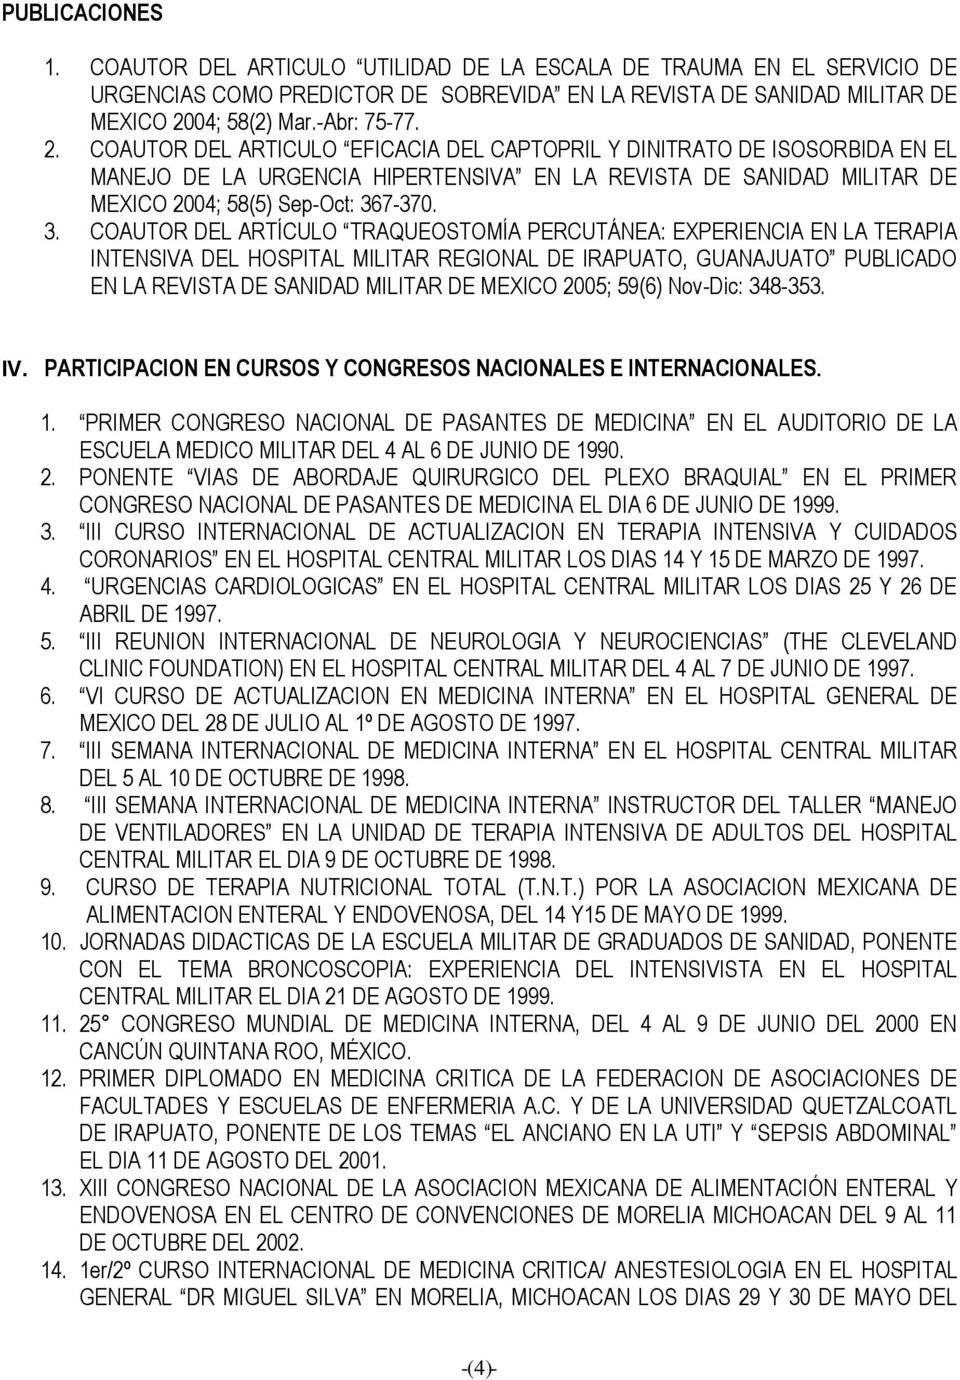 COAUTOR DEL ARTICULO EFICACIA DEL CAPTOPRIL Y DINITRATO DE ISOSORBIDA EN EL MANEJO DE LA URGENCIA HIPERTENSIVA EN LA REVISTA DE SANIDAD MILITAR DE MEXICO 2004; 58(5) SepOct: 36